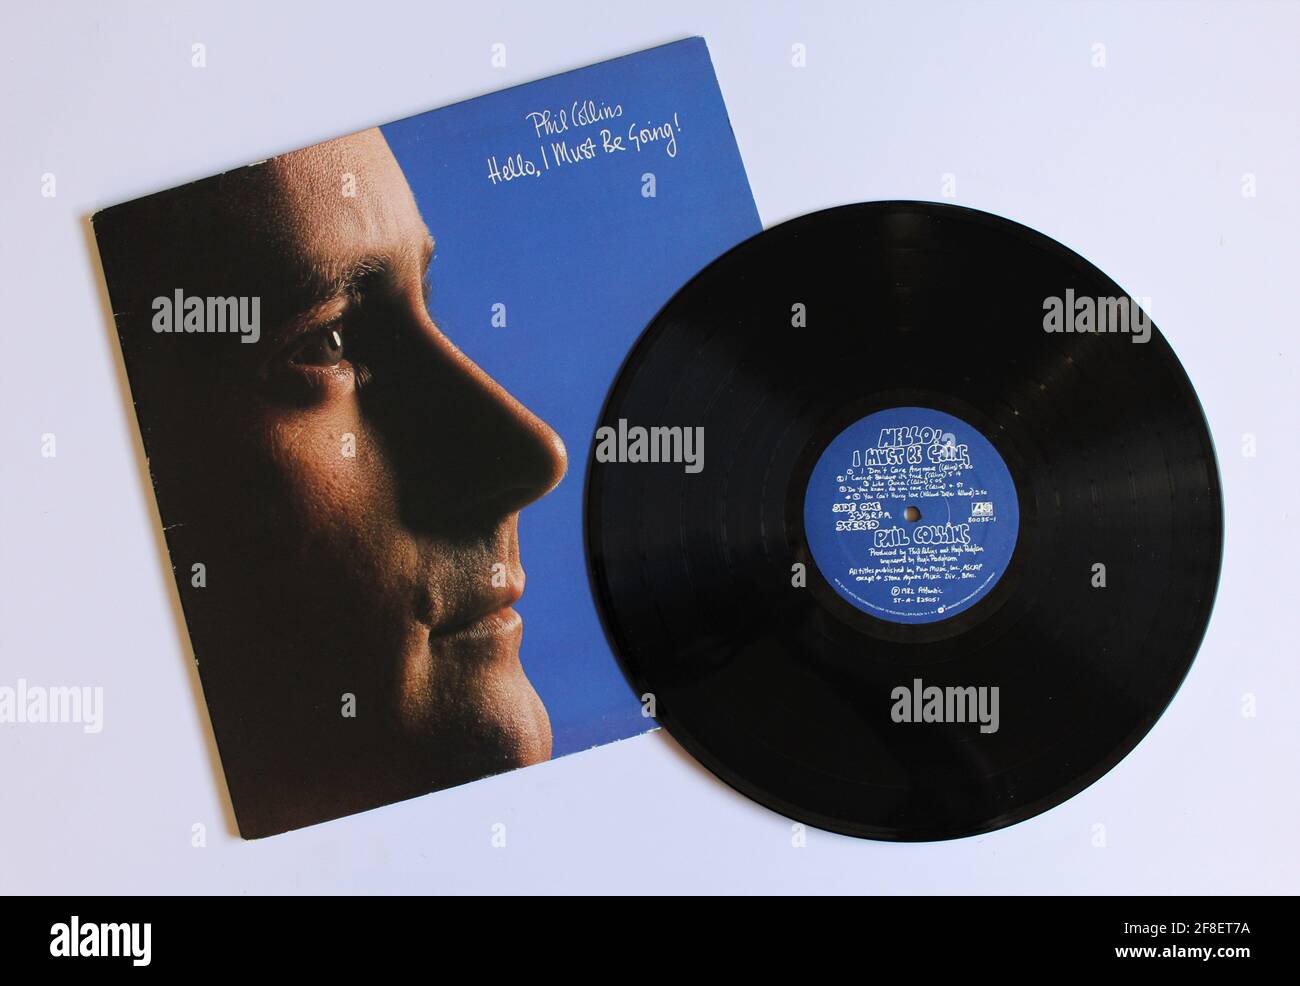 Rock-, Jazz- und Soft-Rock-Künstler, Phil Collins-Musikalbum auf Vinyl-LP. Mit dem Titel: Hallo, ich muss gehen! Stockfoto